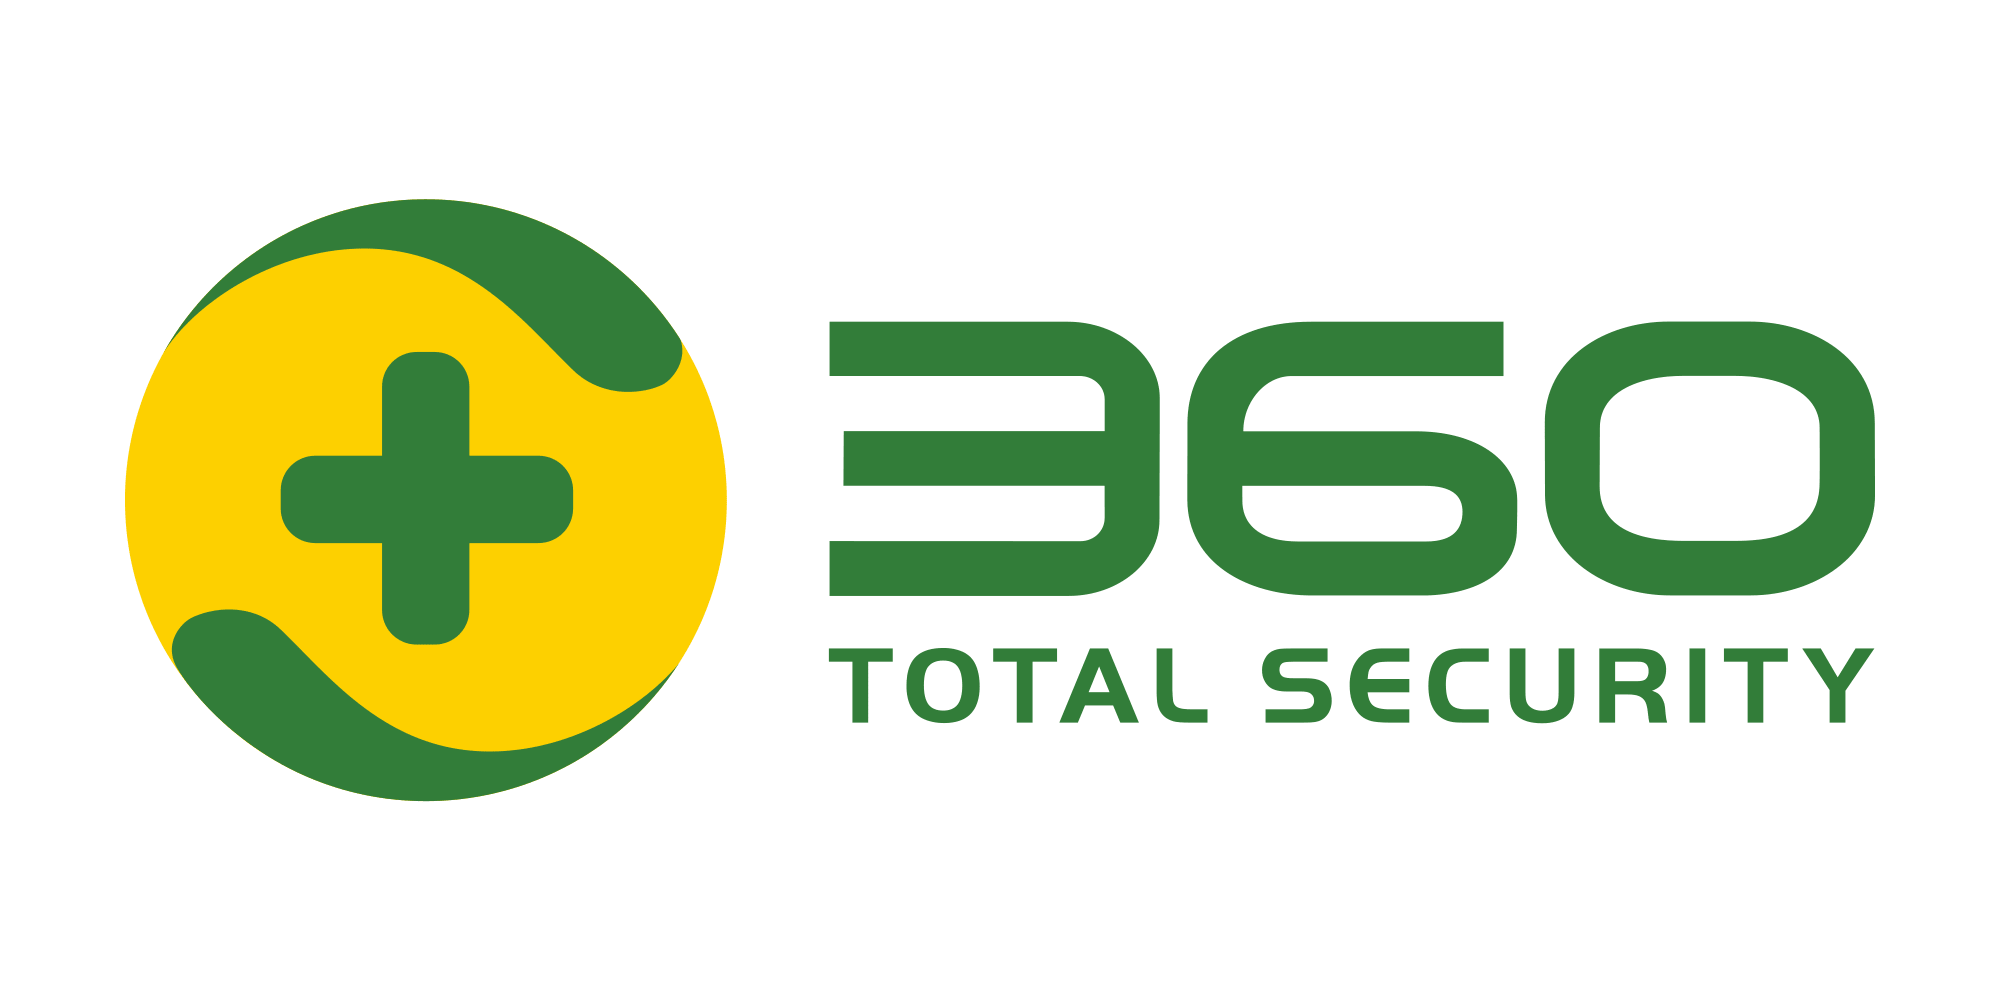 360 Total Security Premium 1 year / 3 PC Global